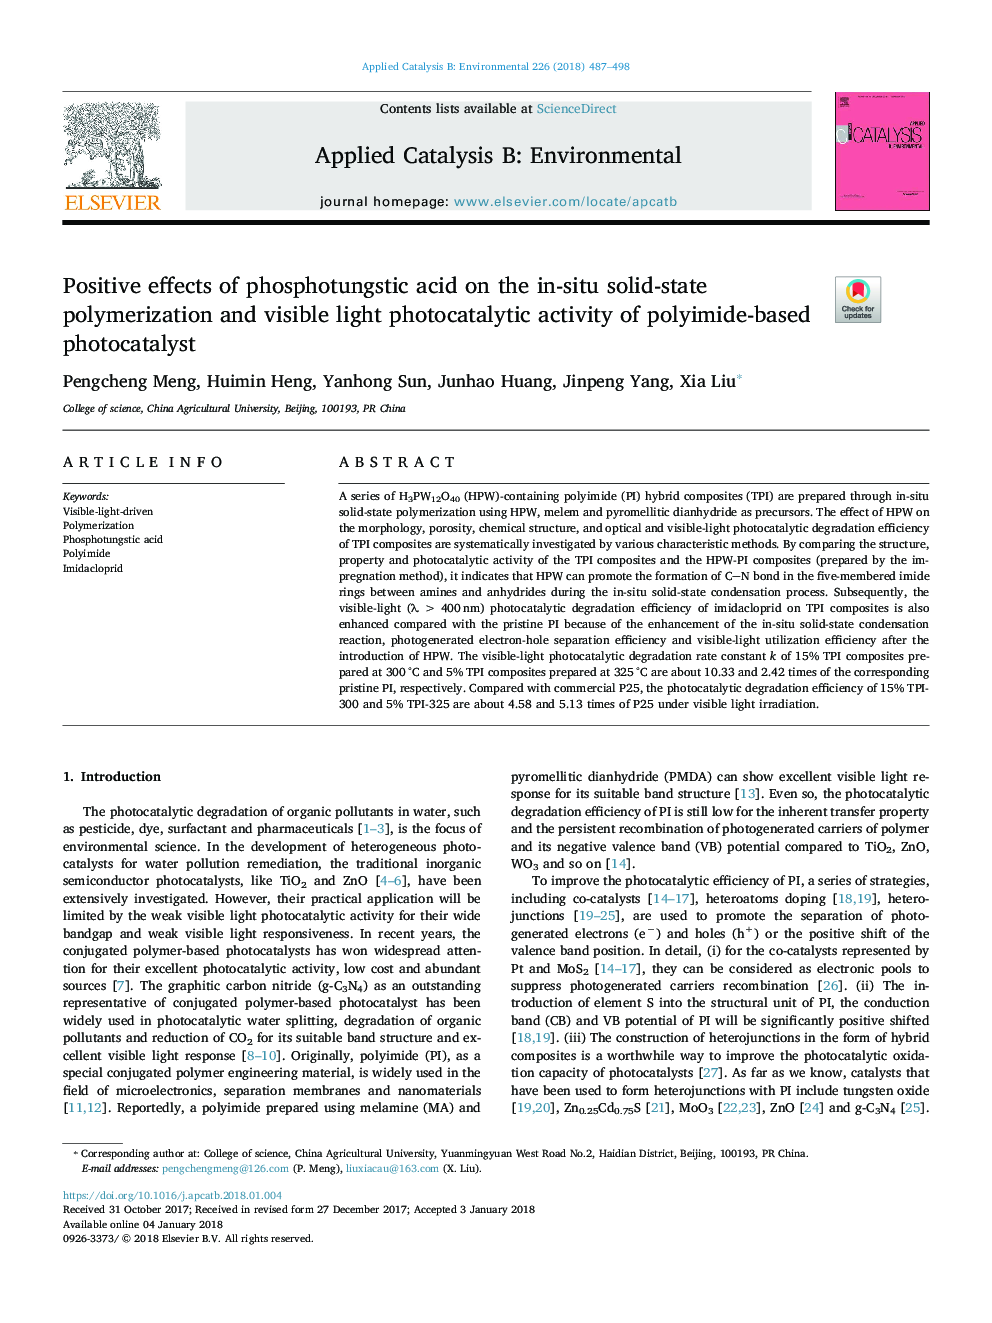 اثرات مثبت اسید فسفات ورشوفیک بر پلیمریزاسیون جامدات در محل و فعالیت فوتوکاتالیتی قابل مشاهده نور فوتوکاتالیست بر پایه پلی آمید 